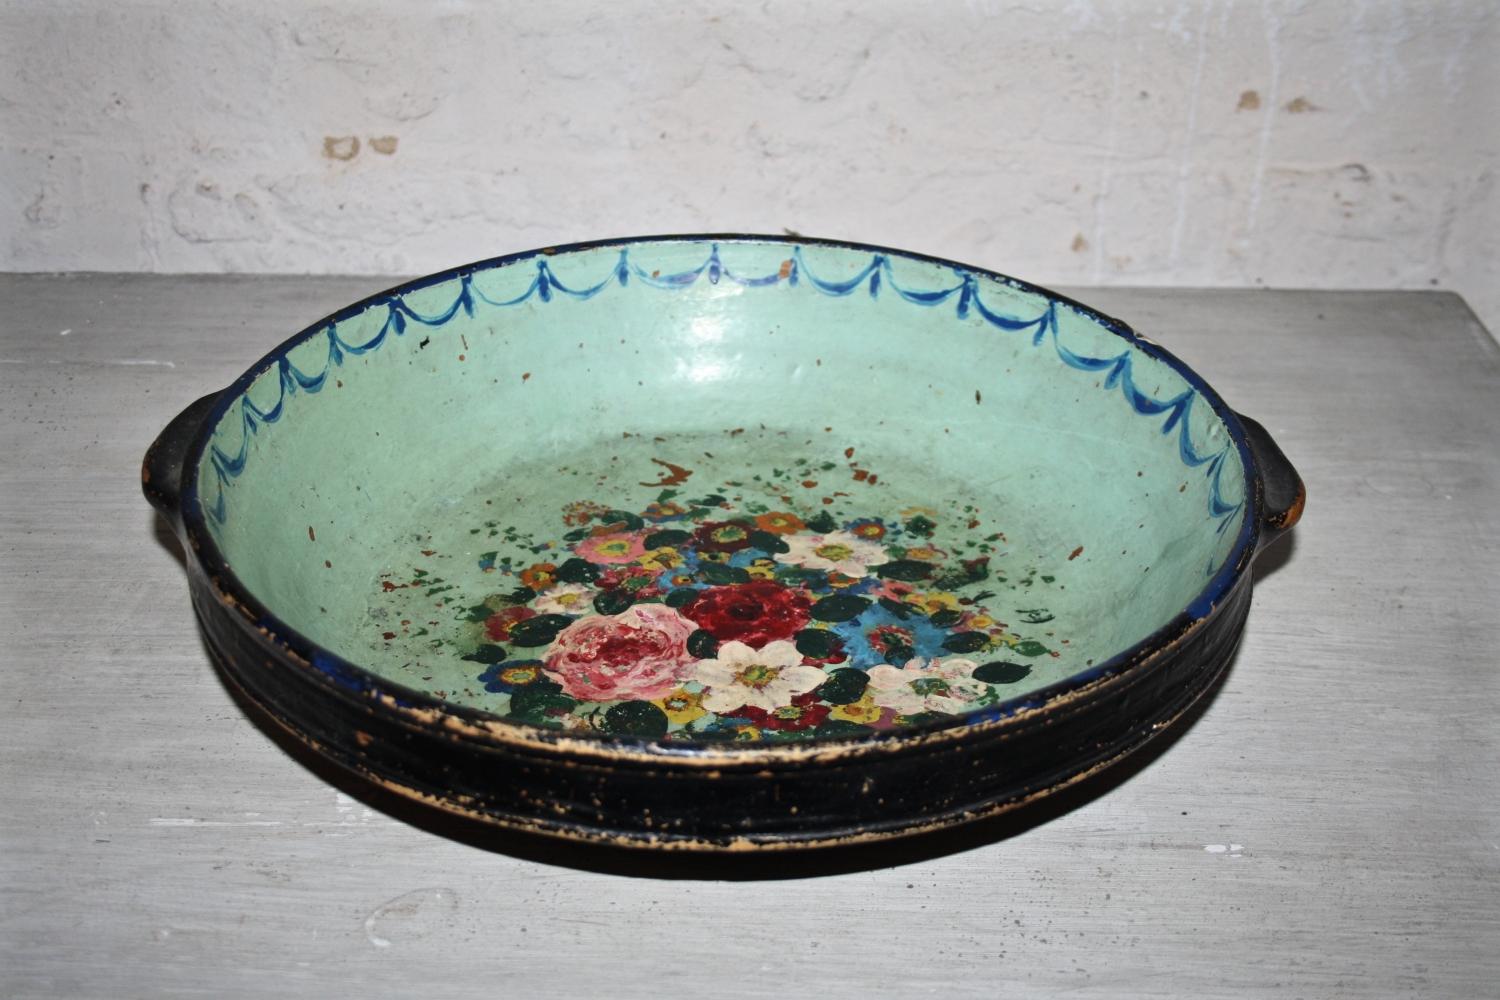 Floral ceramic dish